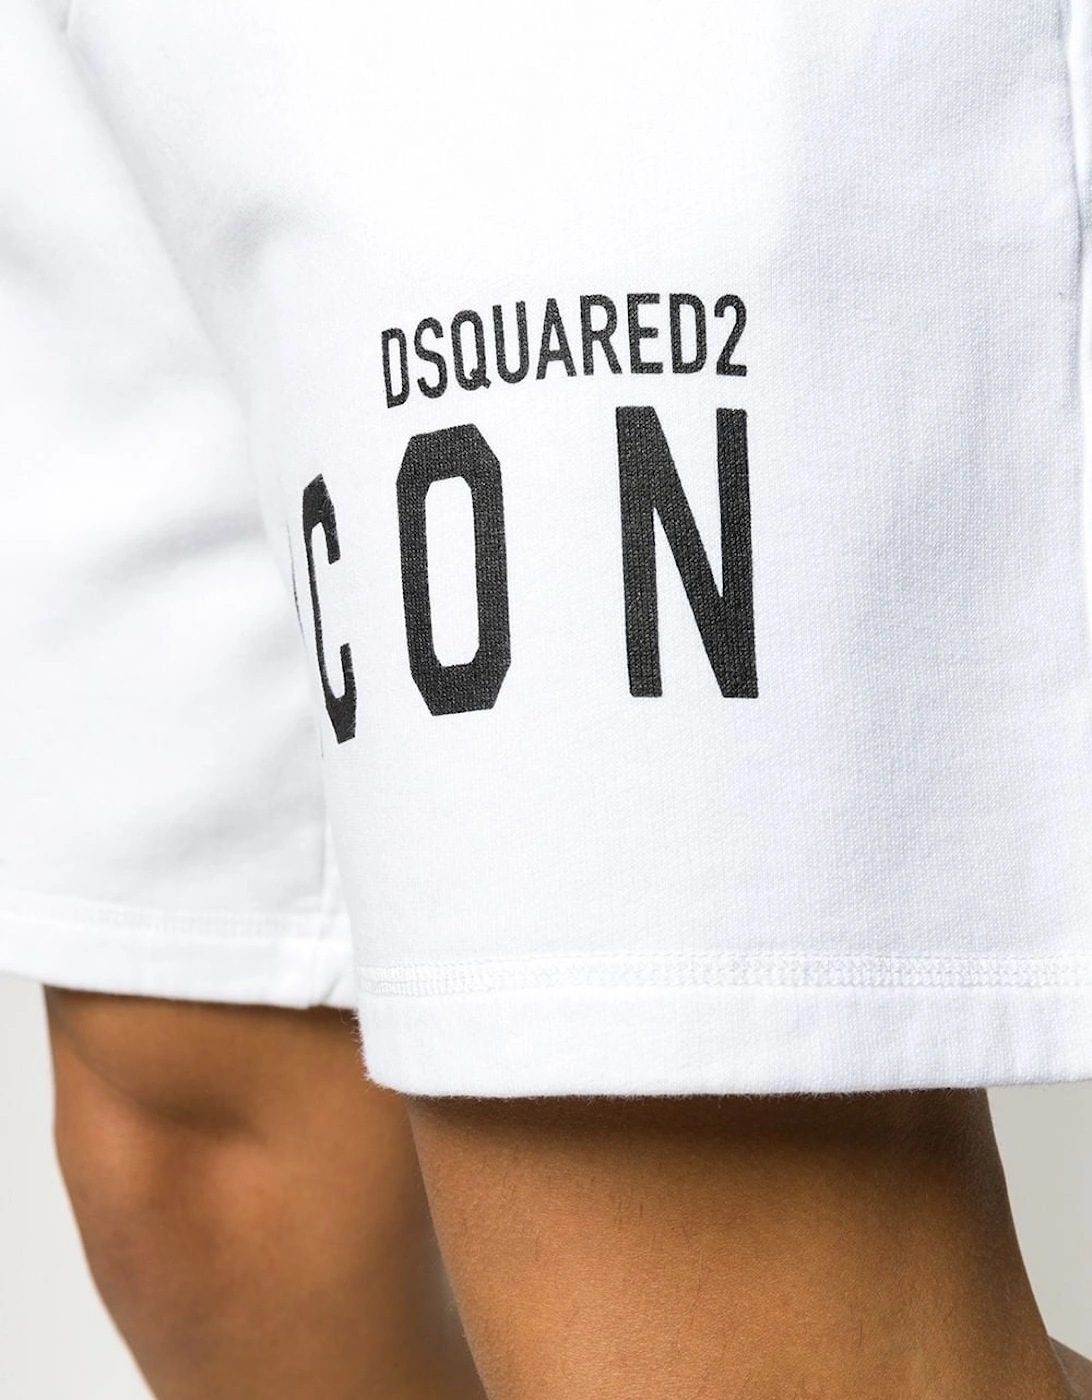 ICON Logo Print Shorts in White